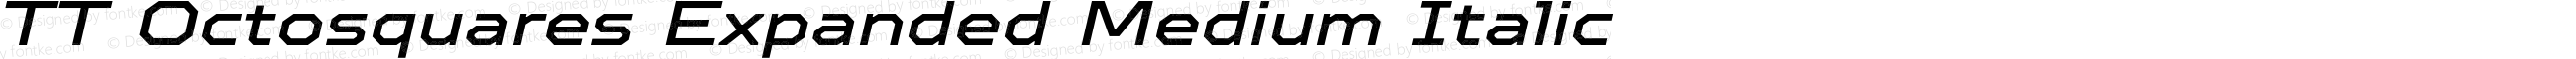 TT Octosquares Expanded Medium Italic